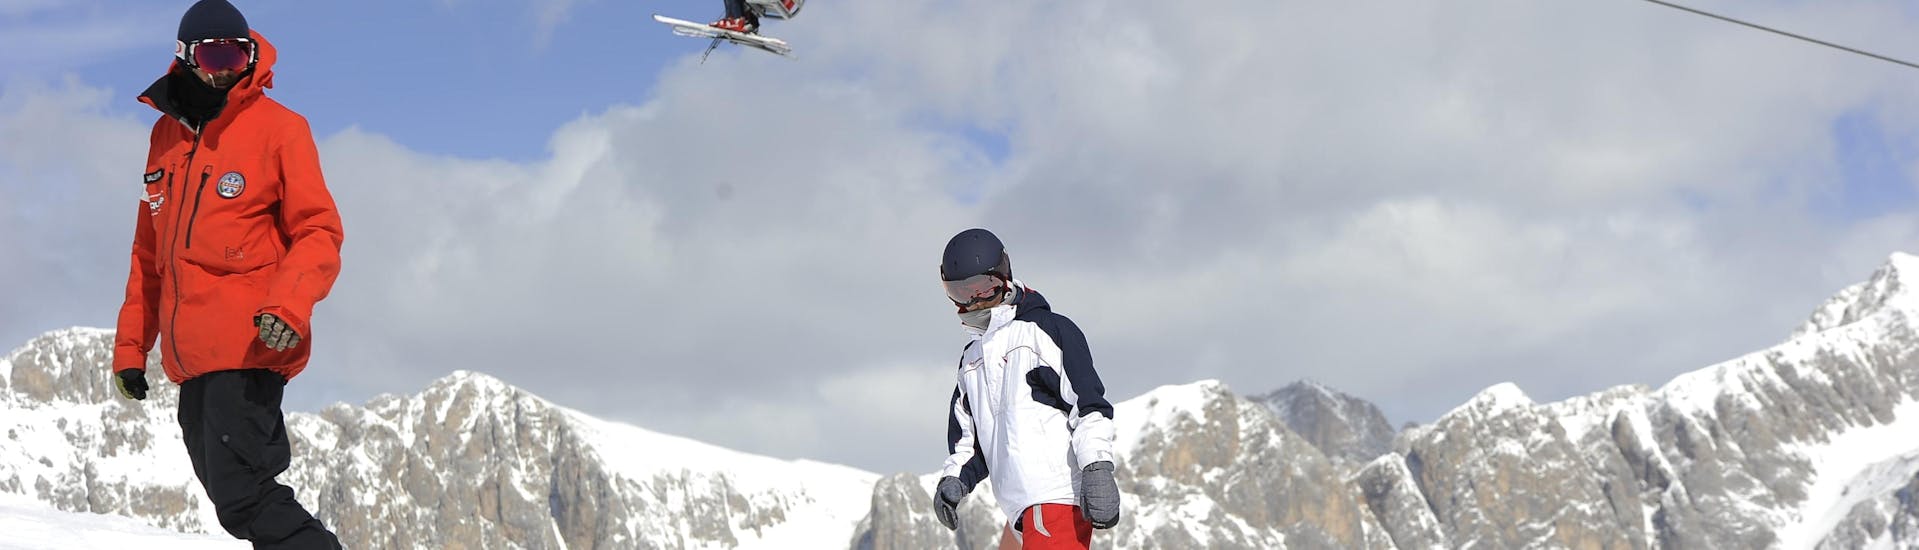 Snowboarder auf den Pisten von Falcade während eines Snowboard-Privatkurses für Kinder und Erwachsene aller Levels.